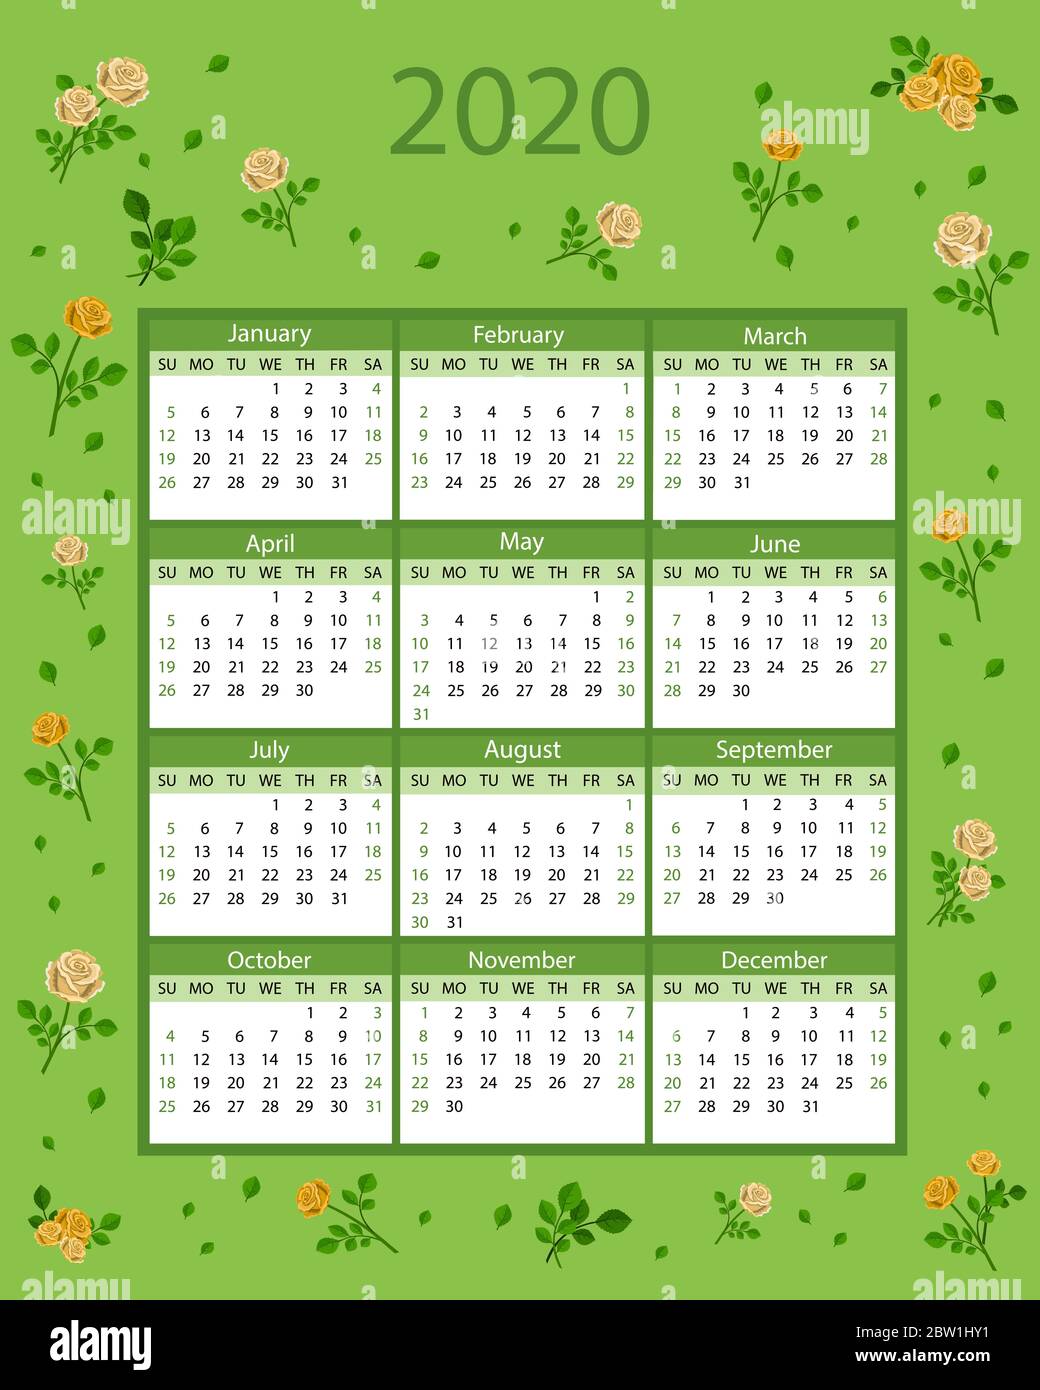 Kalender 2020. Die Woche beginnt am Sonntag. Florales Design auf grünem  Hintergrund. Vektorgrafik Stockfotografie - Alamy